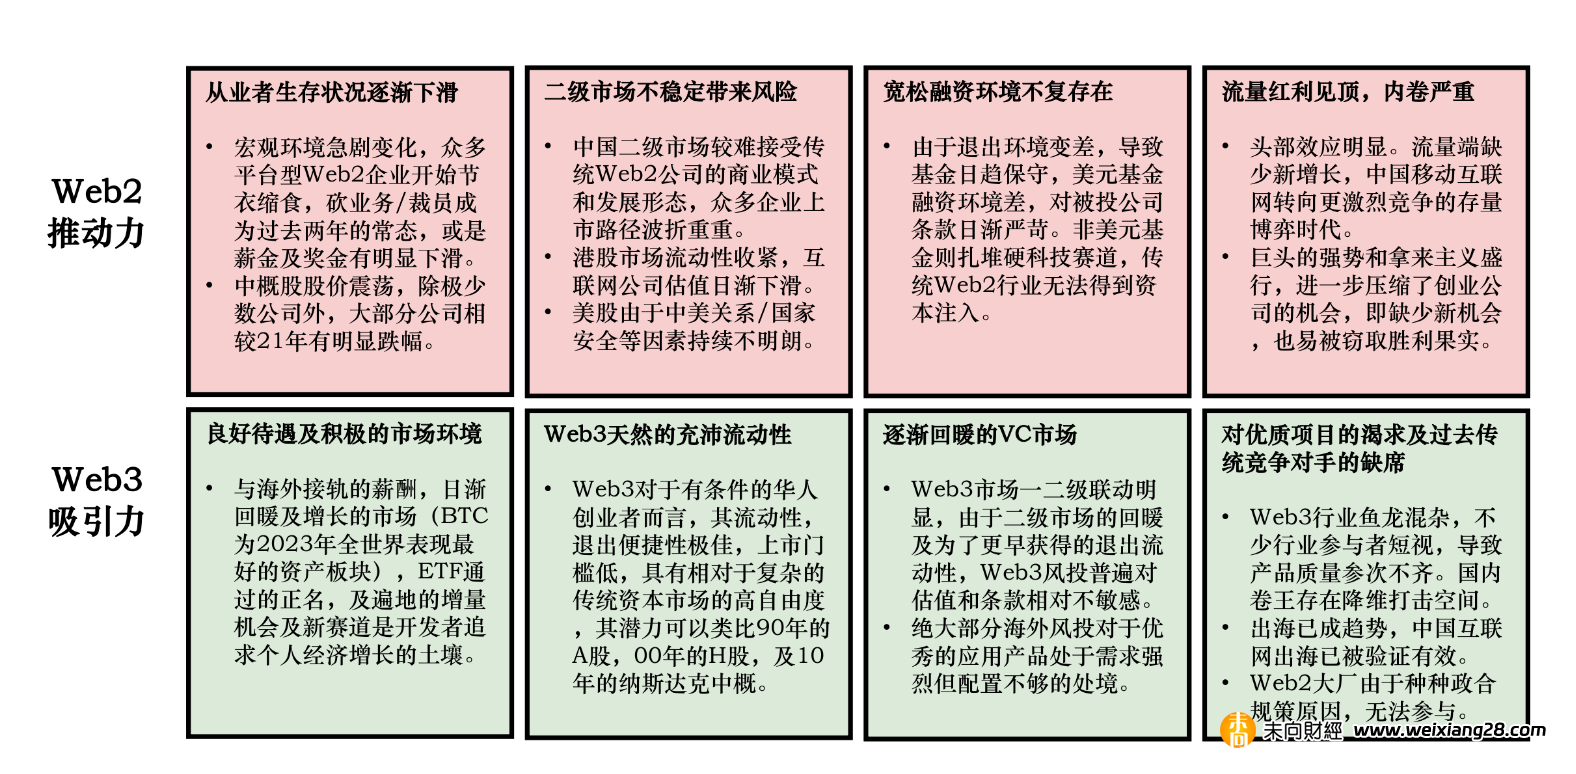 Folius Ventures：Web3 中國開發報告 (消費者應用專題)插图6